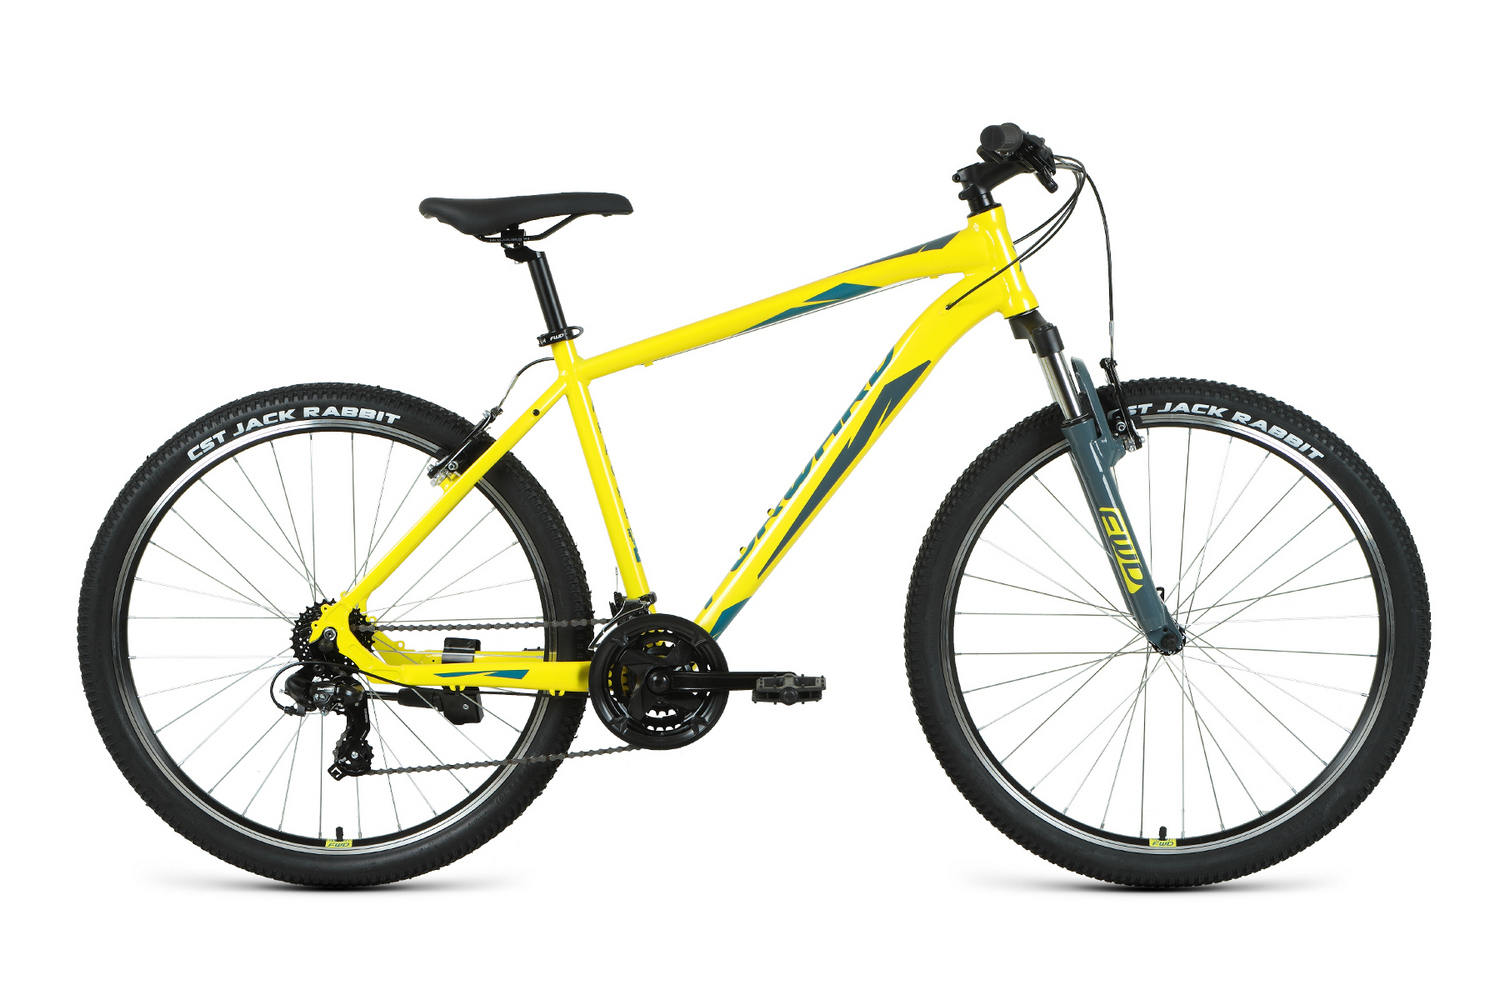 Горный велосипед Forward Apache 27.5 1.2 S, год 2021, цвет Желтый-Зеленый, ростовка 19